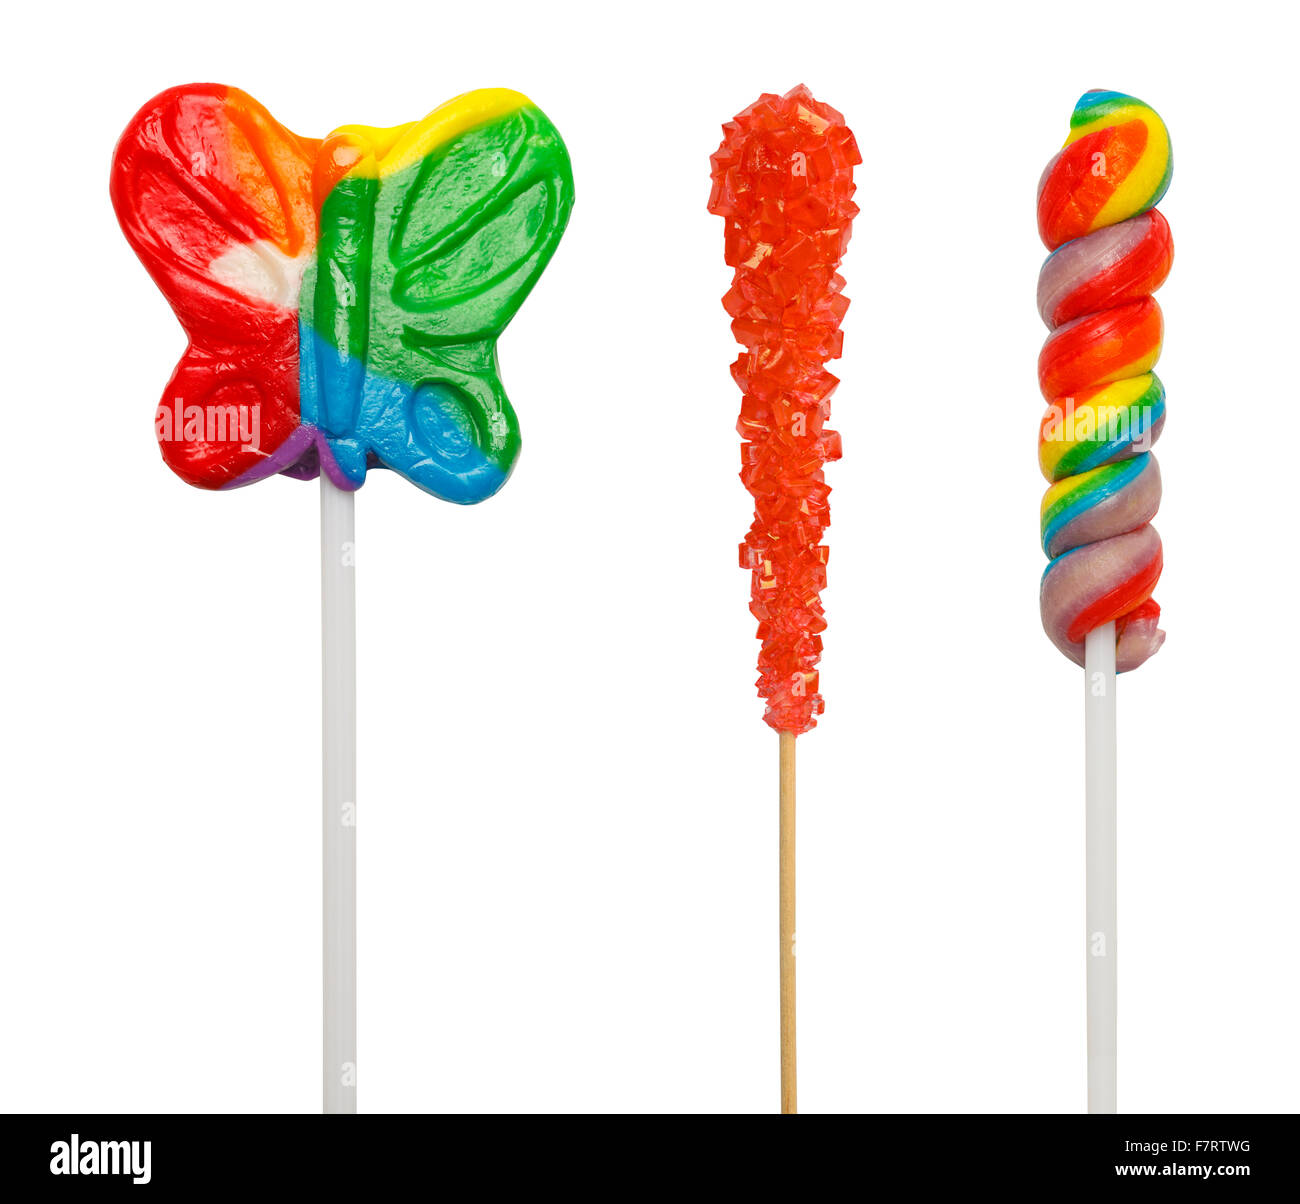 Drei verschiedene Lollipop-Sauger, Isolated on White Background. Stockfoto